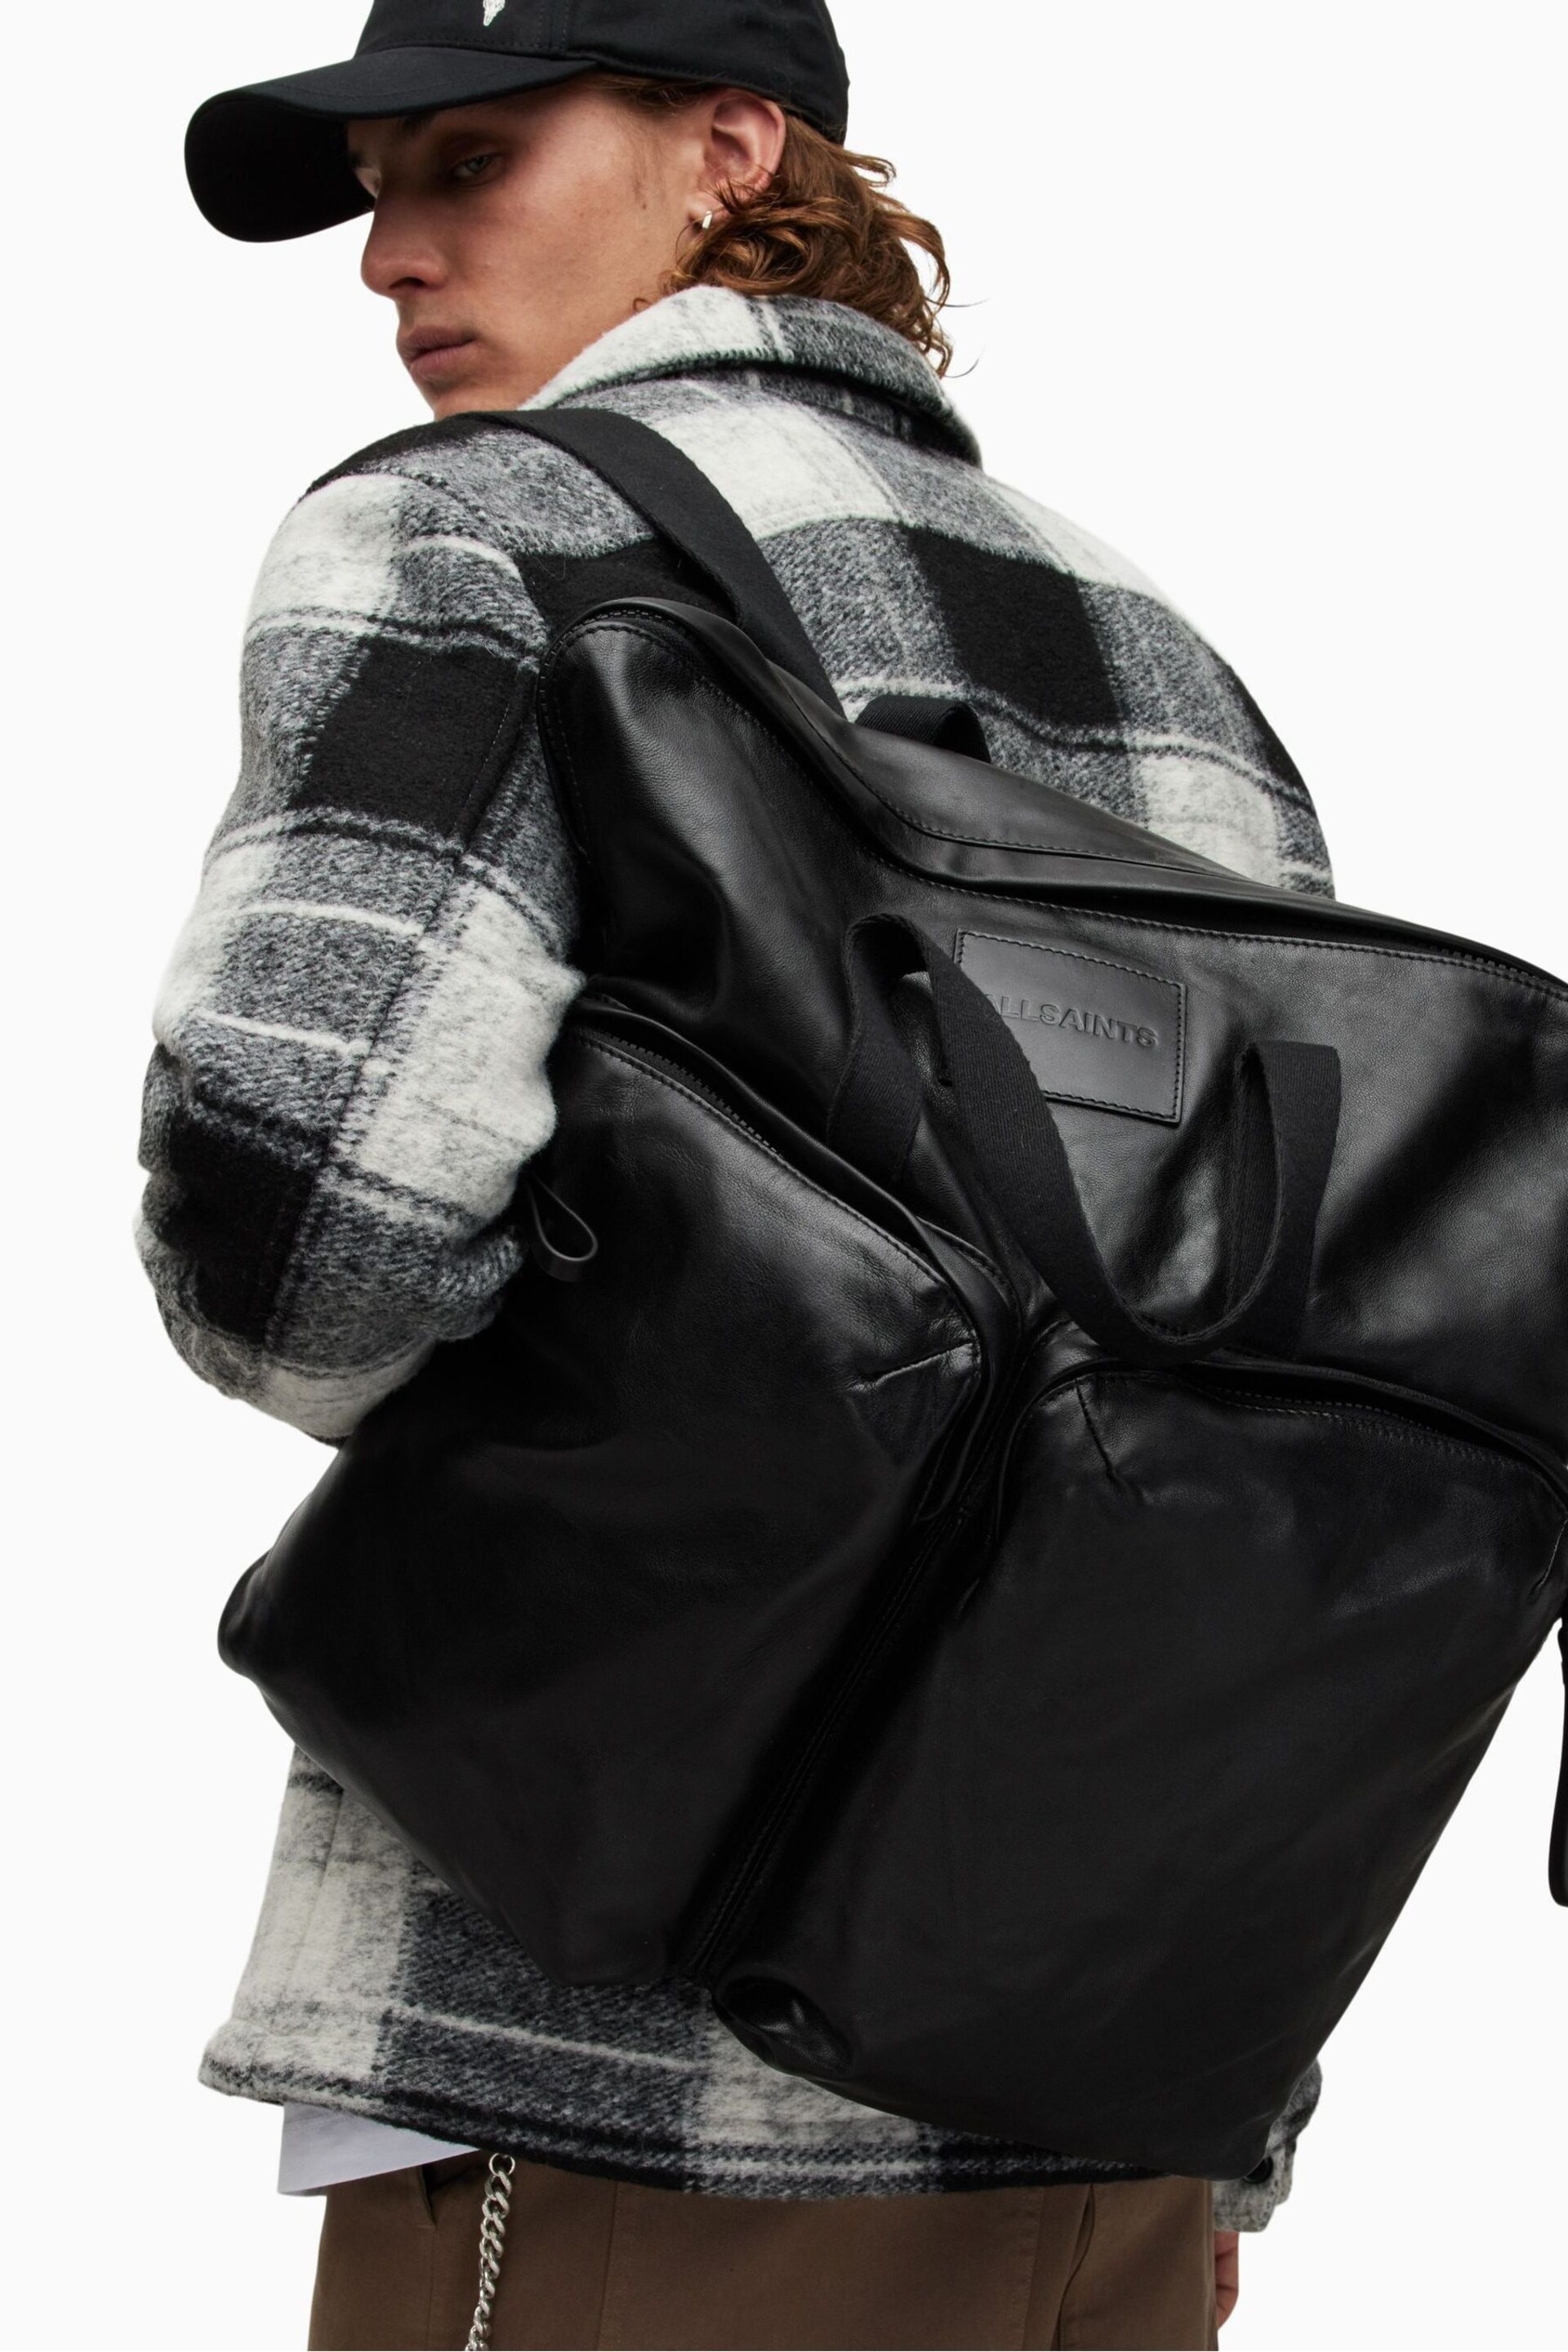 AllSaints Black Force Backpack - Image 2 of 5